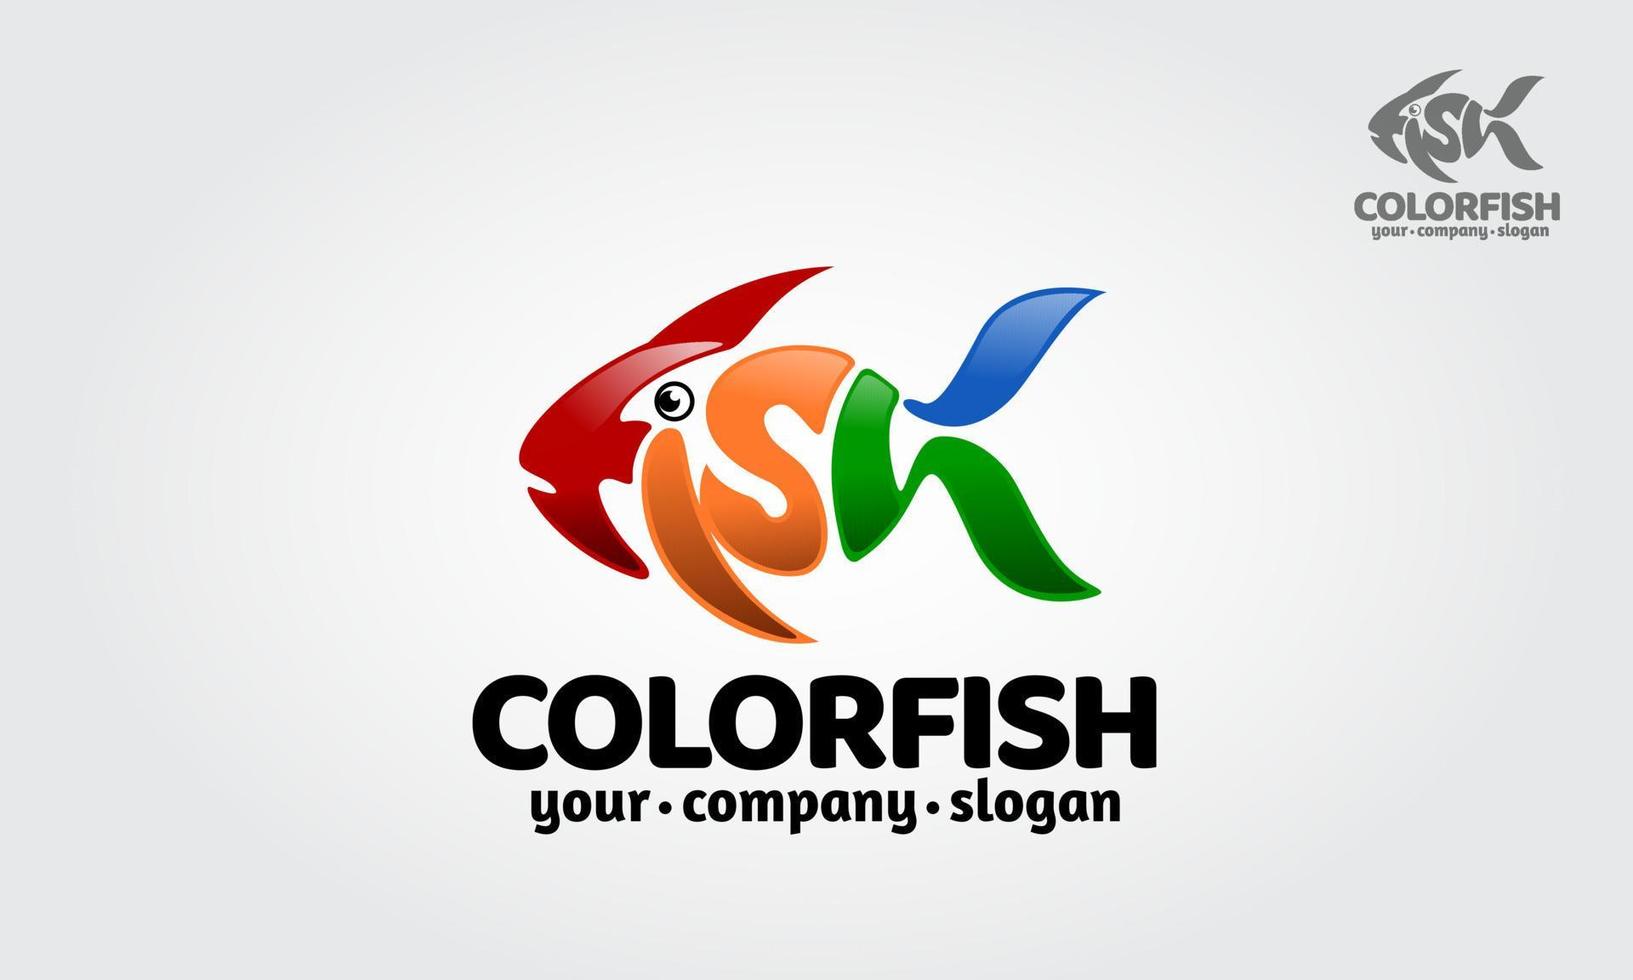 kleur vis vector logo illustratie. vis logo gemaakt van letters van vis. een geweldig logo voor creatieve bureaus, adviesbureaus, bedrijven, marketing, internet, enz.